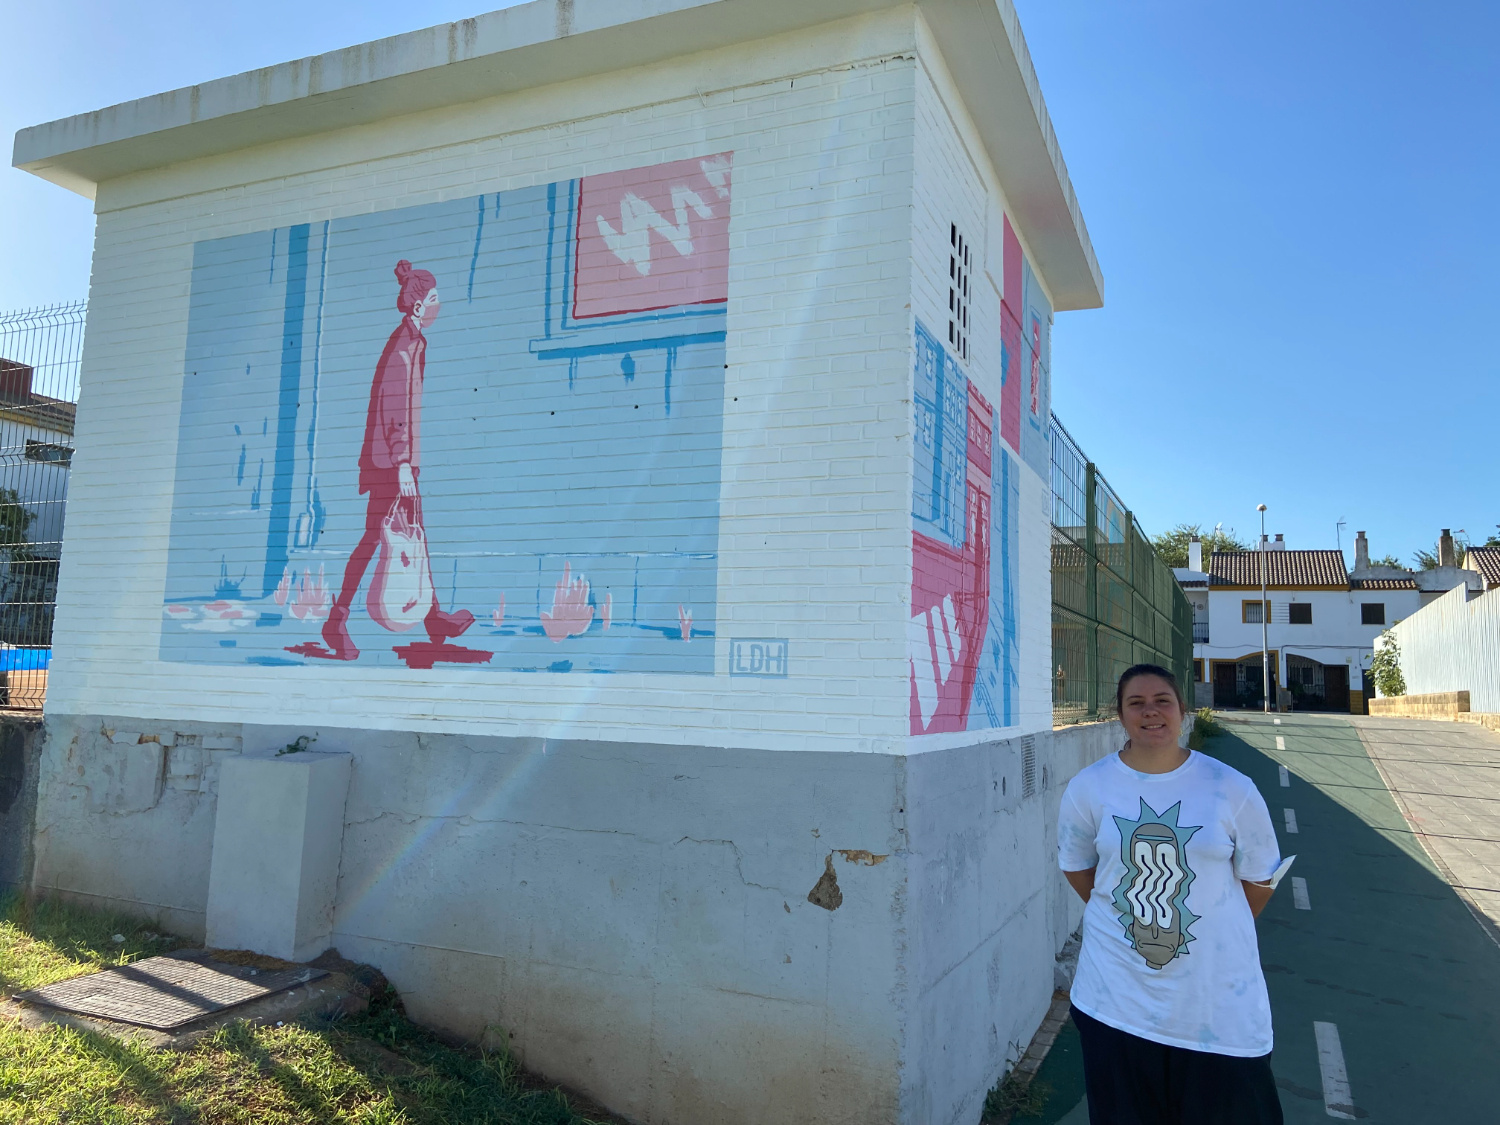 Laura Delgado Hens suma un nuevo mural al Museo de Arte Urbano de La Rinconada